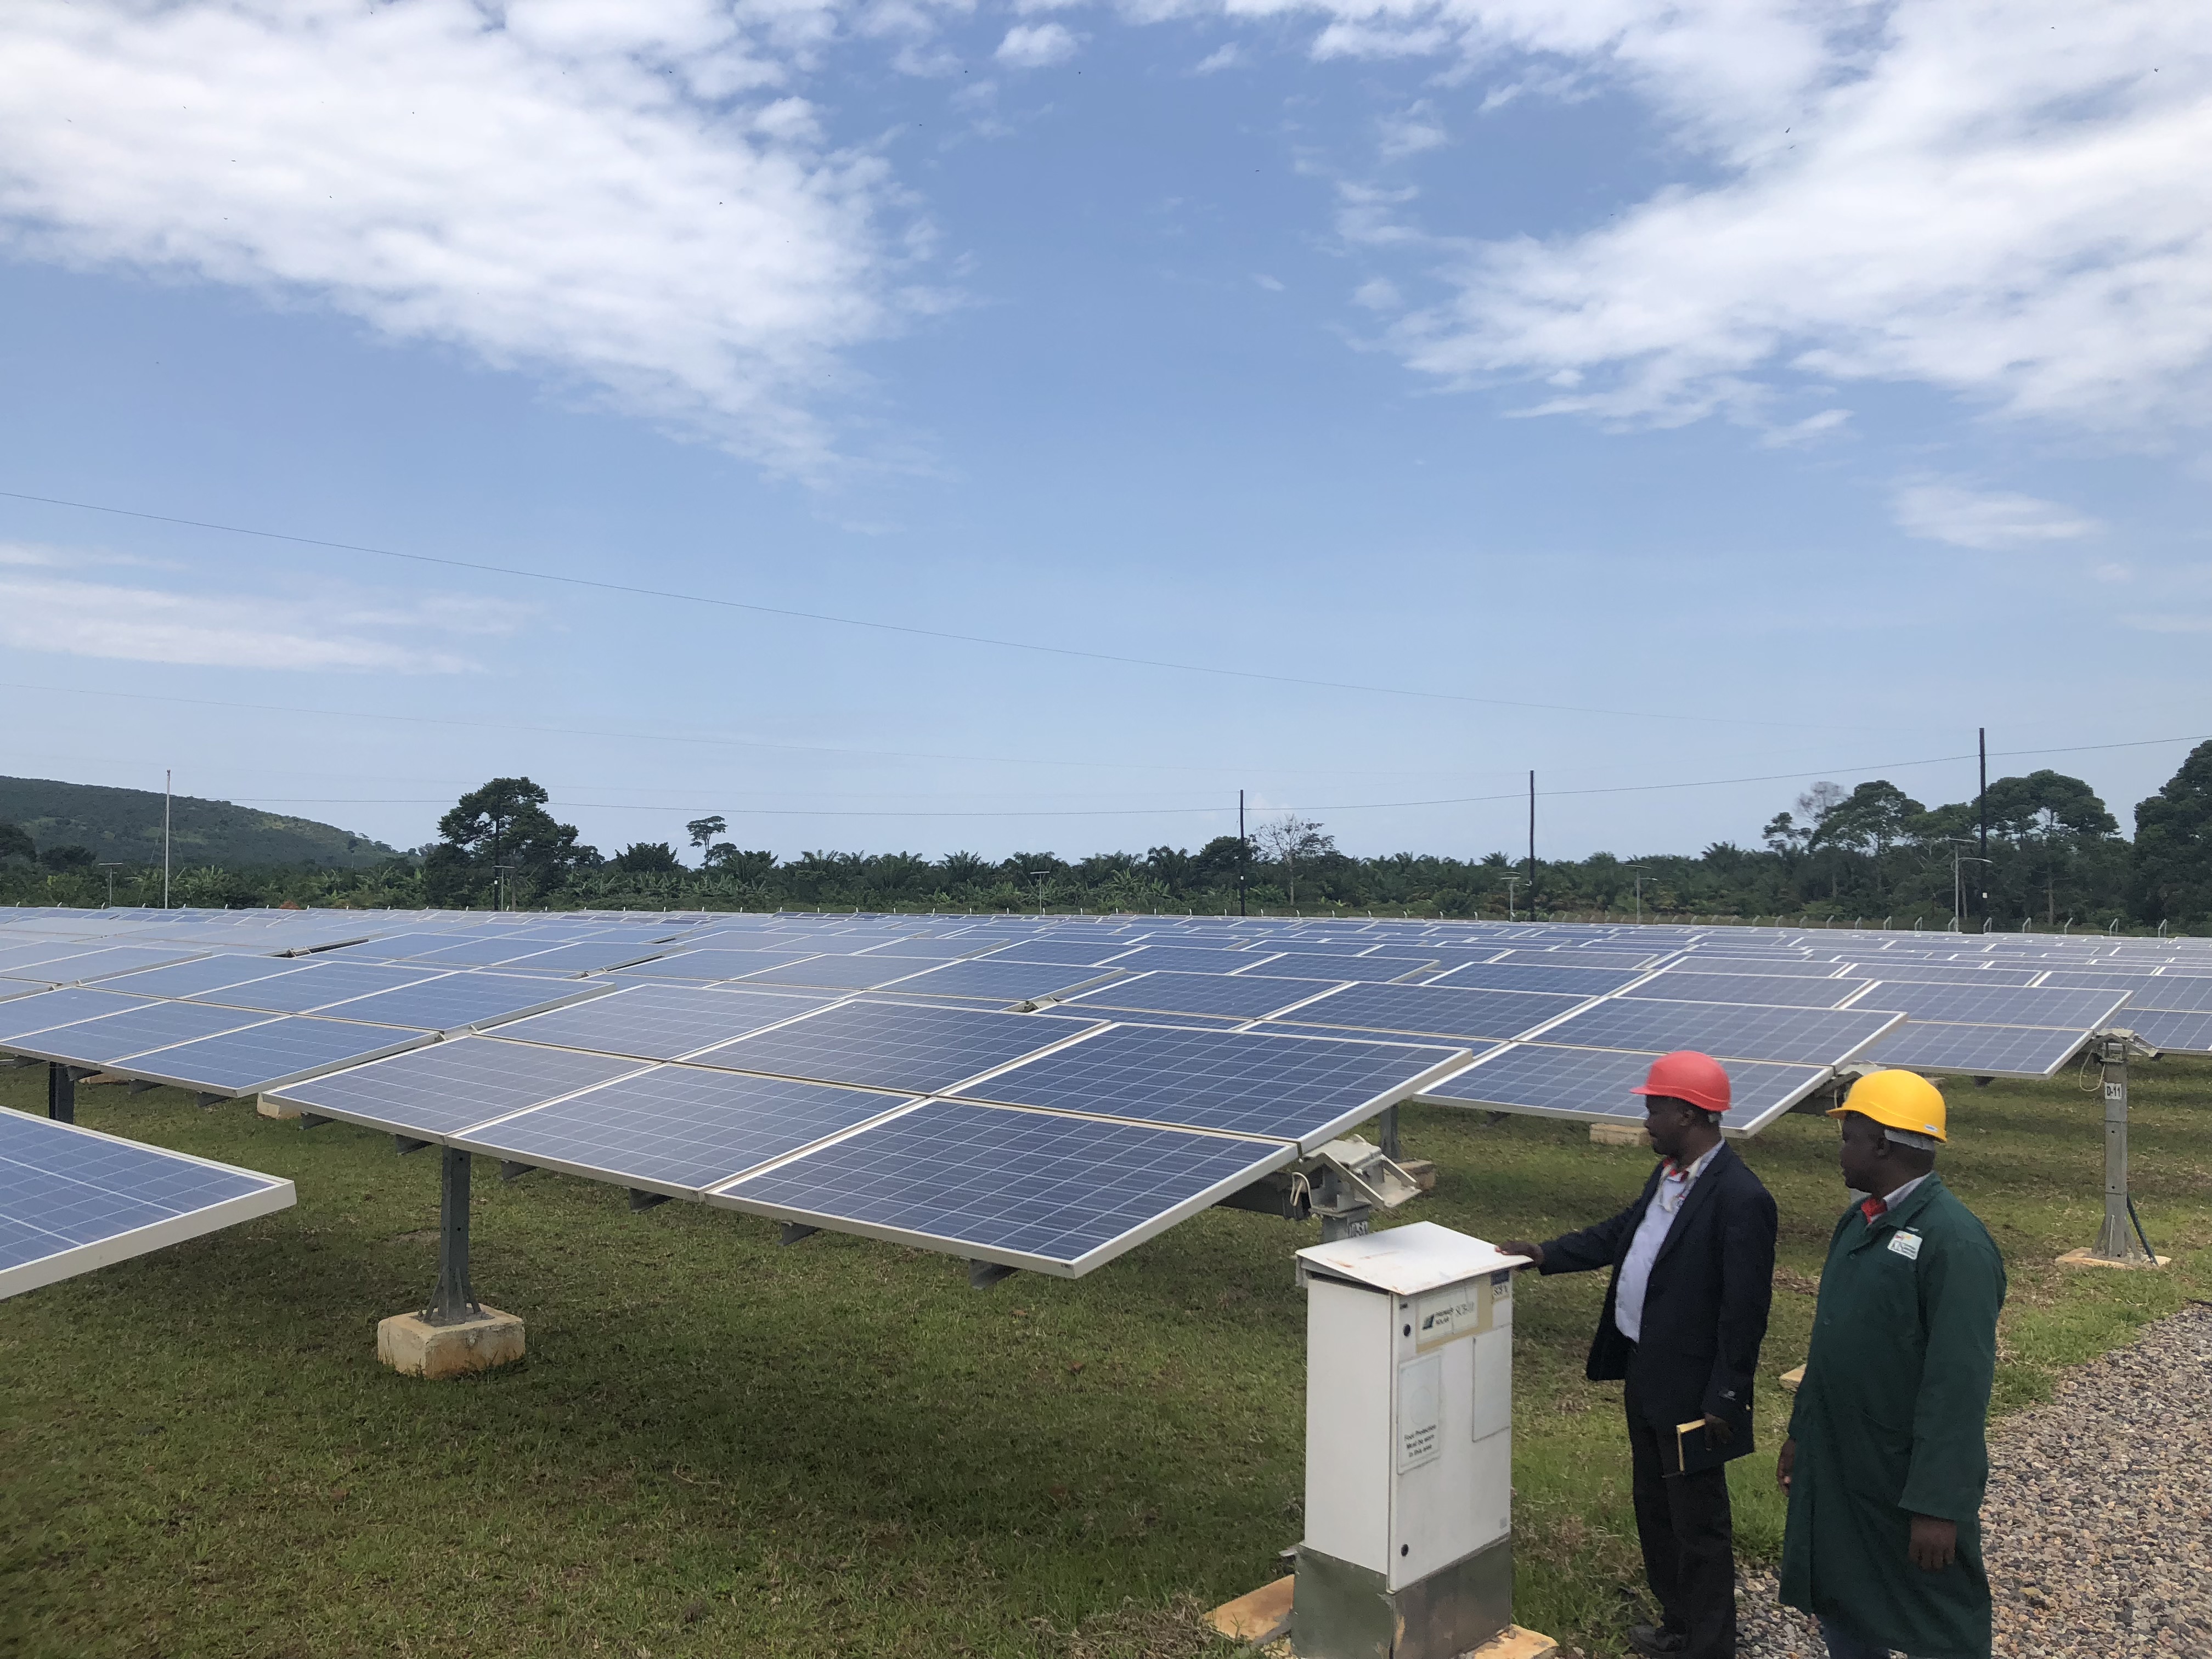 Solar panel farm, Uganda 